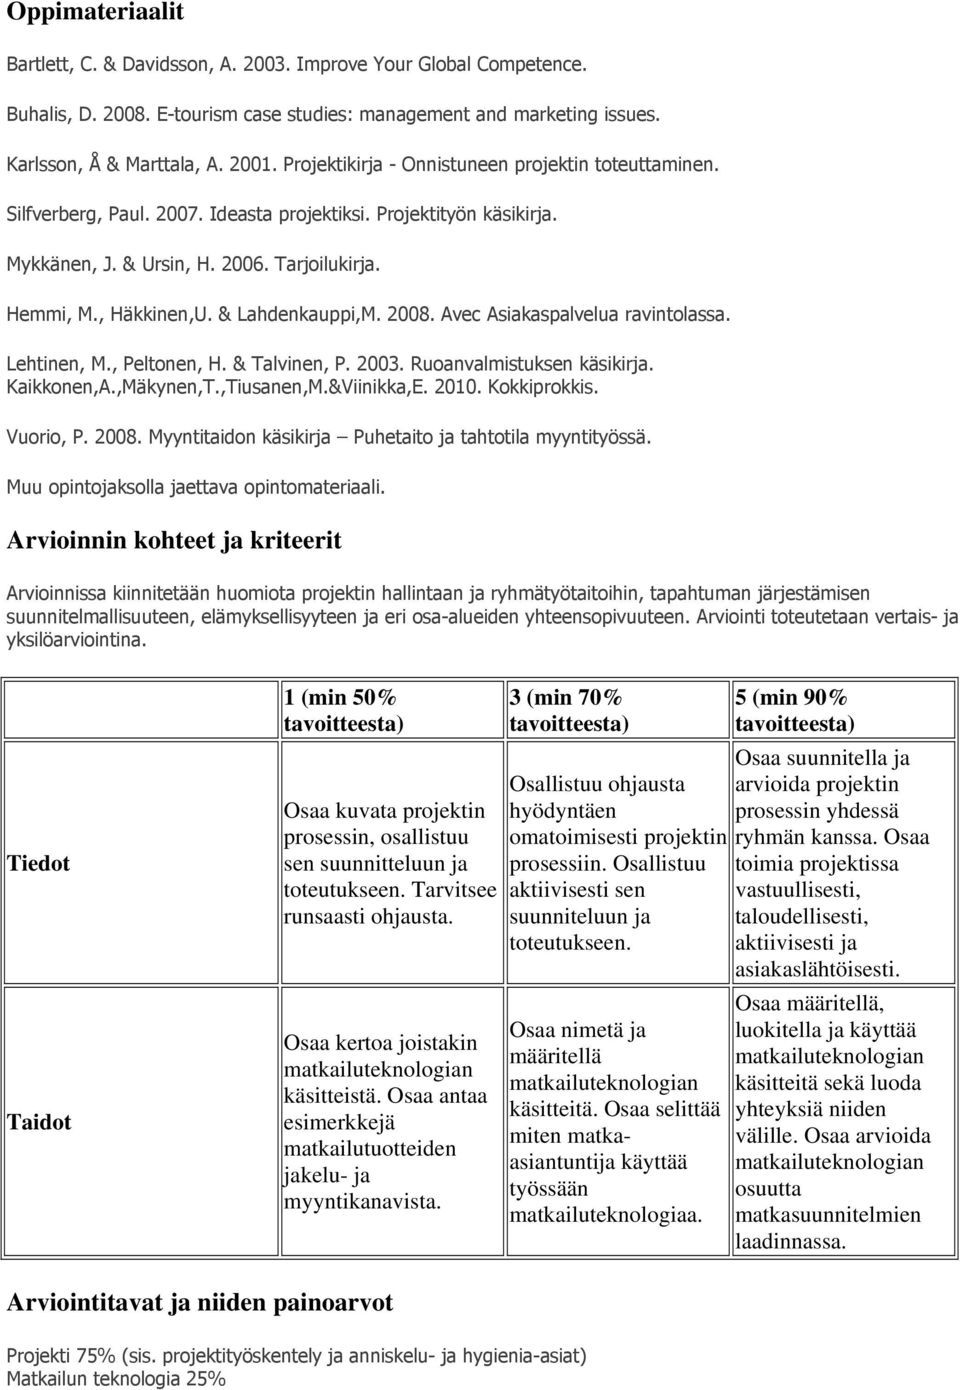 & Lahdenkauppi,M. 2008. Avec Asiakaspalvelua ravintolassa. Lehtinen, M., Peltonen, H. & Talvinen, P. 2003. Ruoanvalmistuksen käsikirja. Kaikkonen,A.,Mäkynen,T.,Tiusanen,M.&Viinikka,E. 2010.